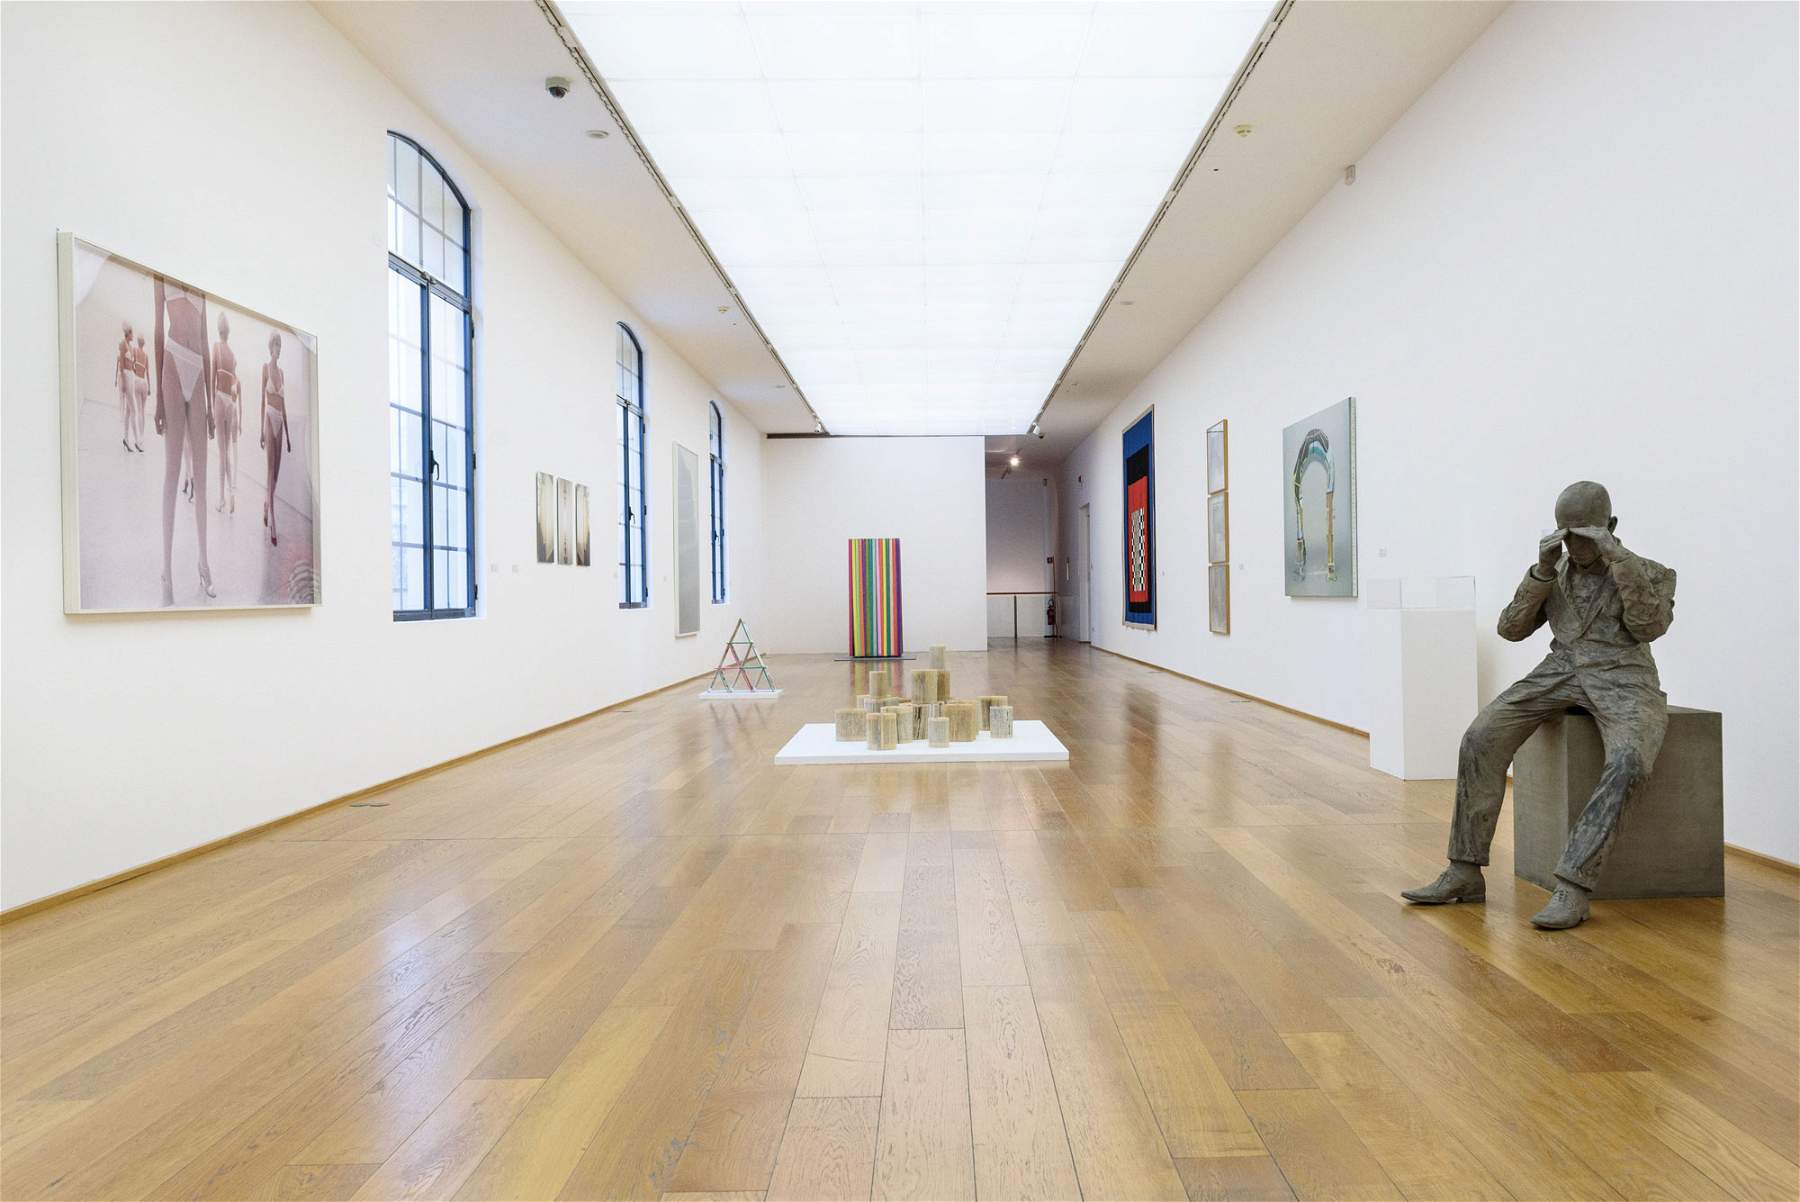 Plus de 3 millions d'euros du ministère pour l'acquisition d'œuvres d'art contemporaines